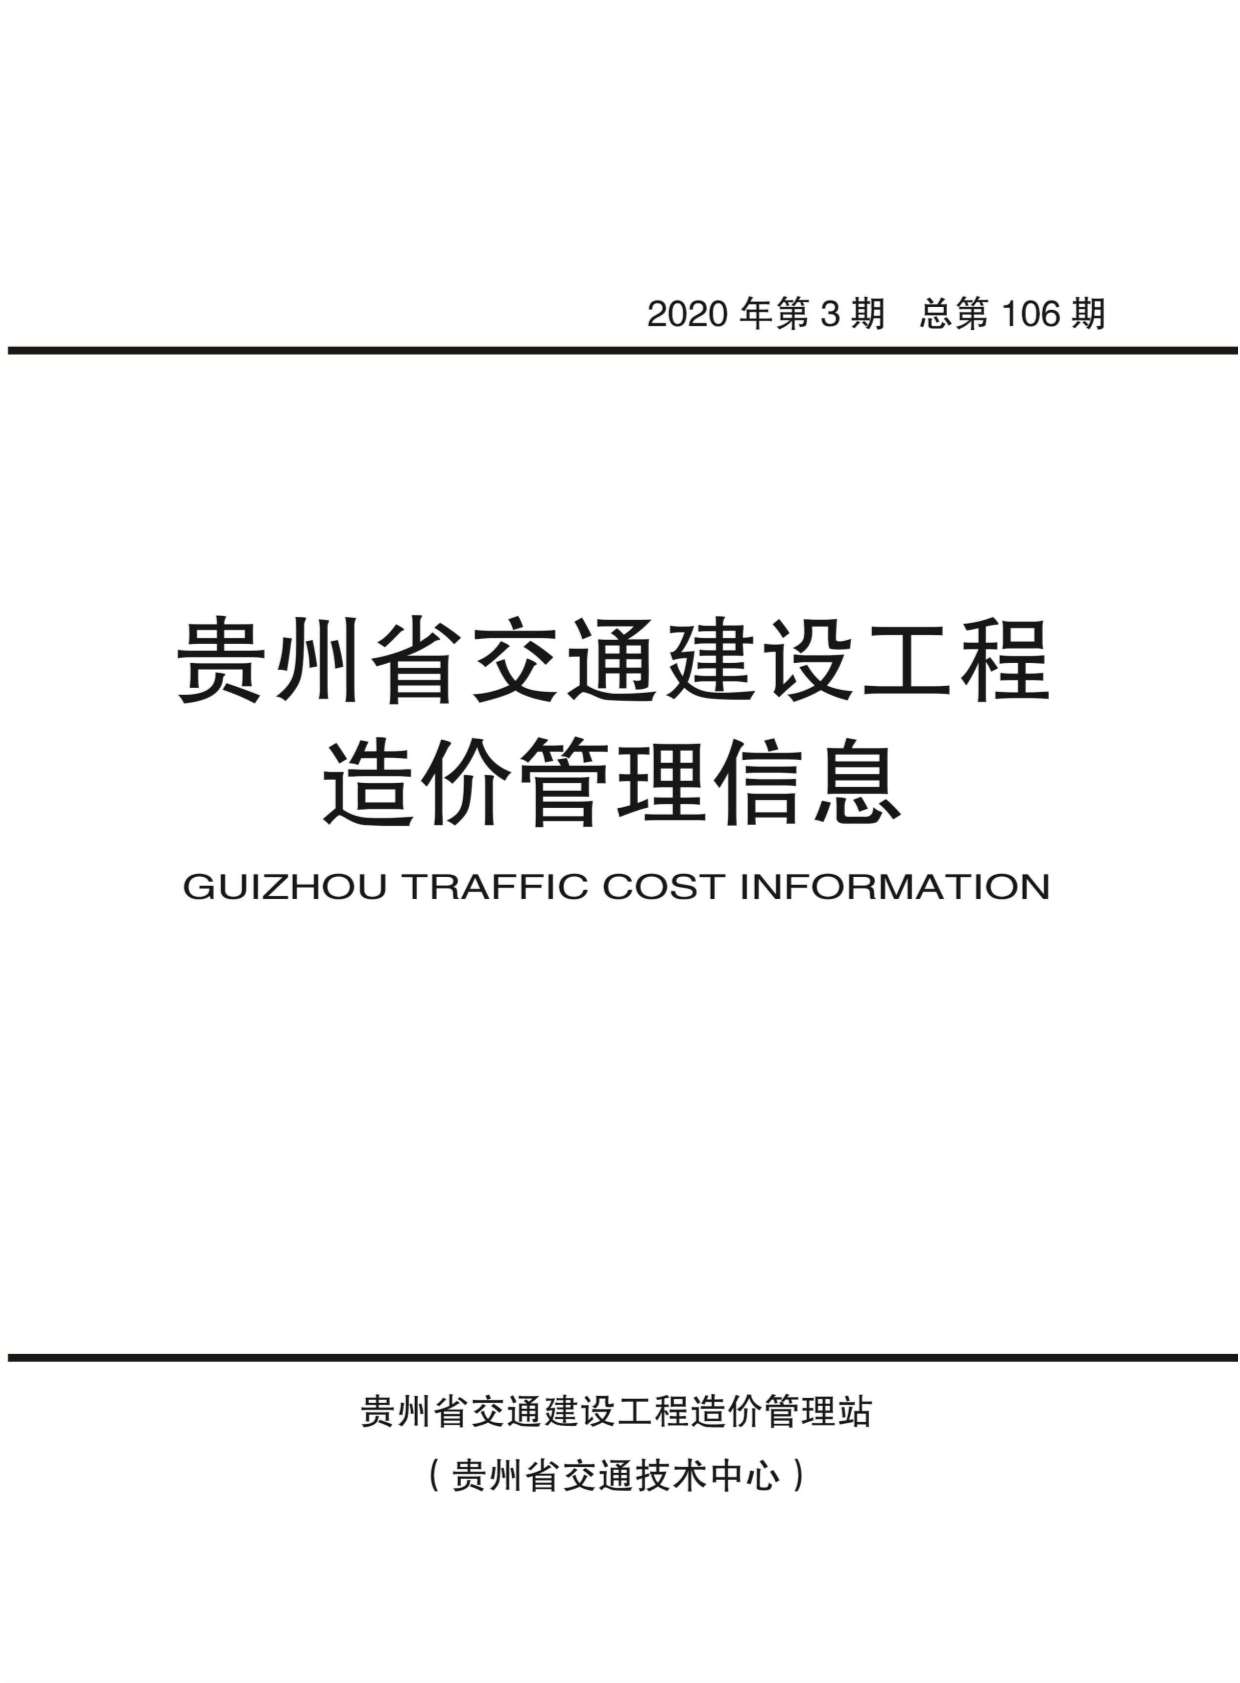 贵州省2020年3月交通公路信息价